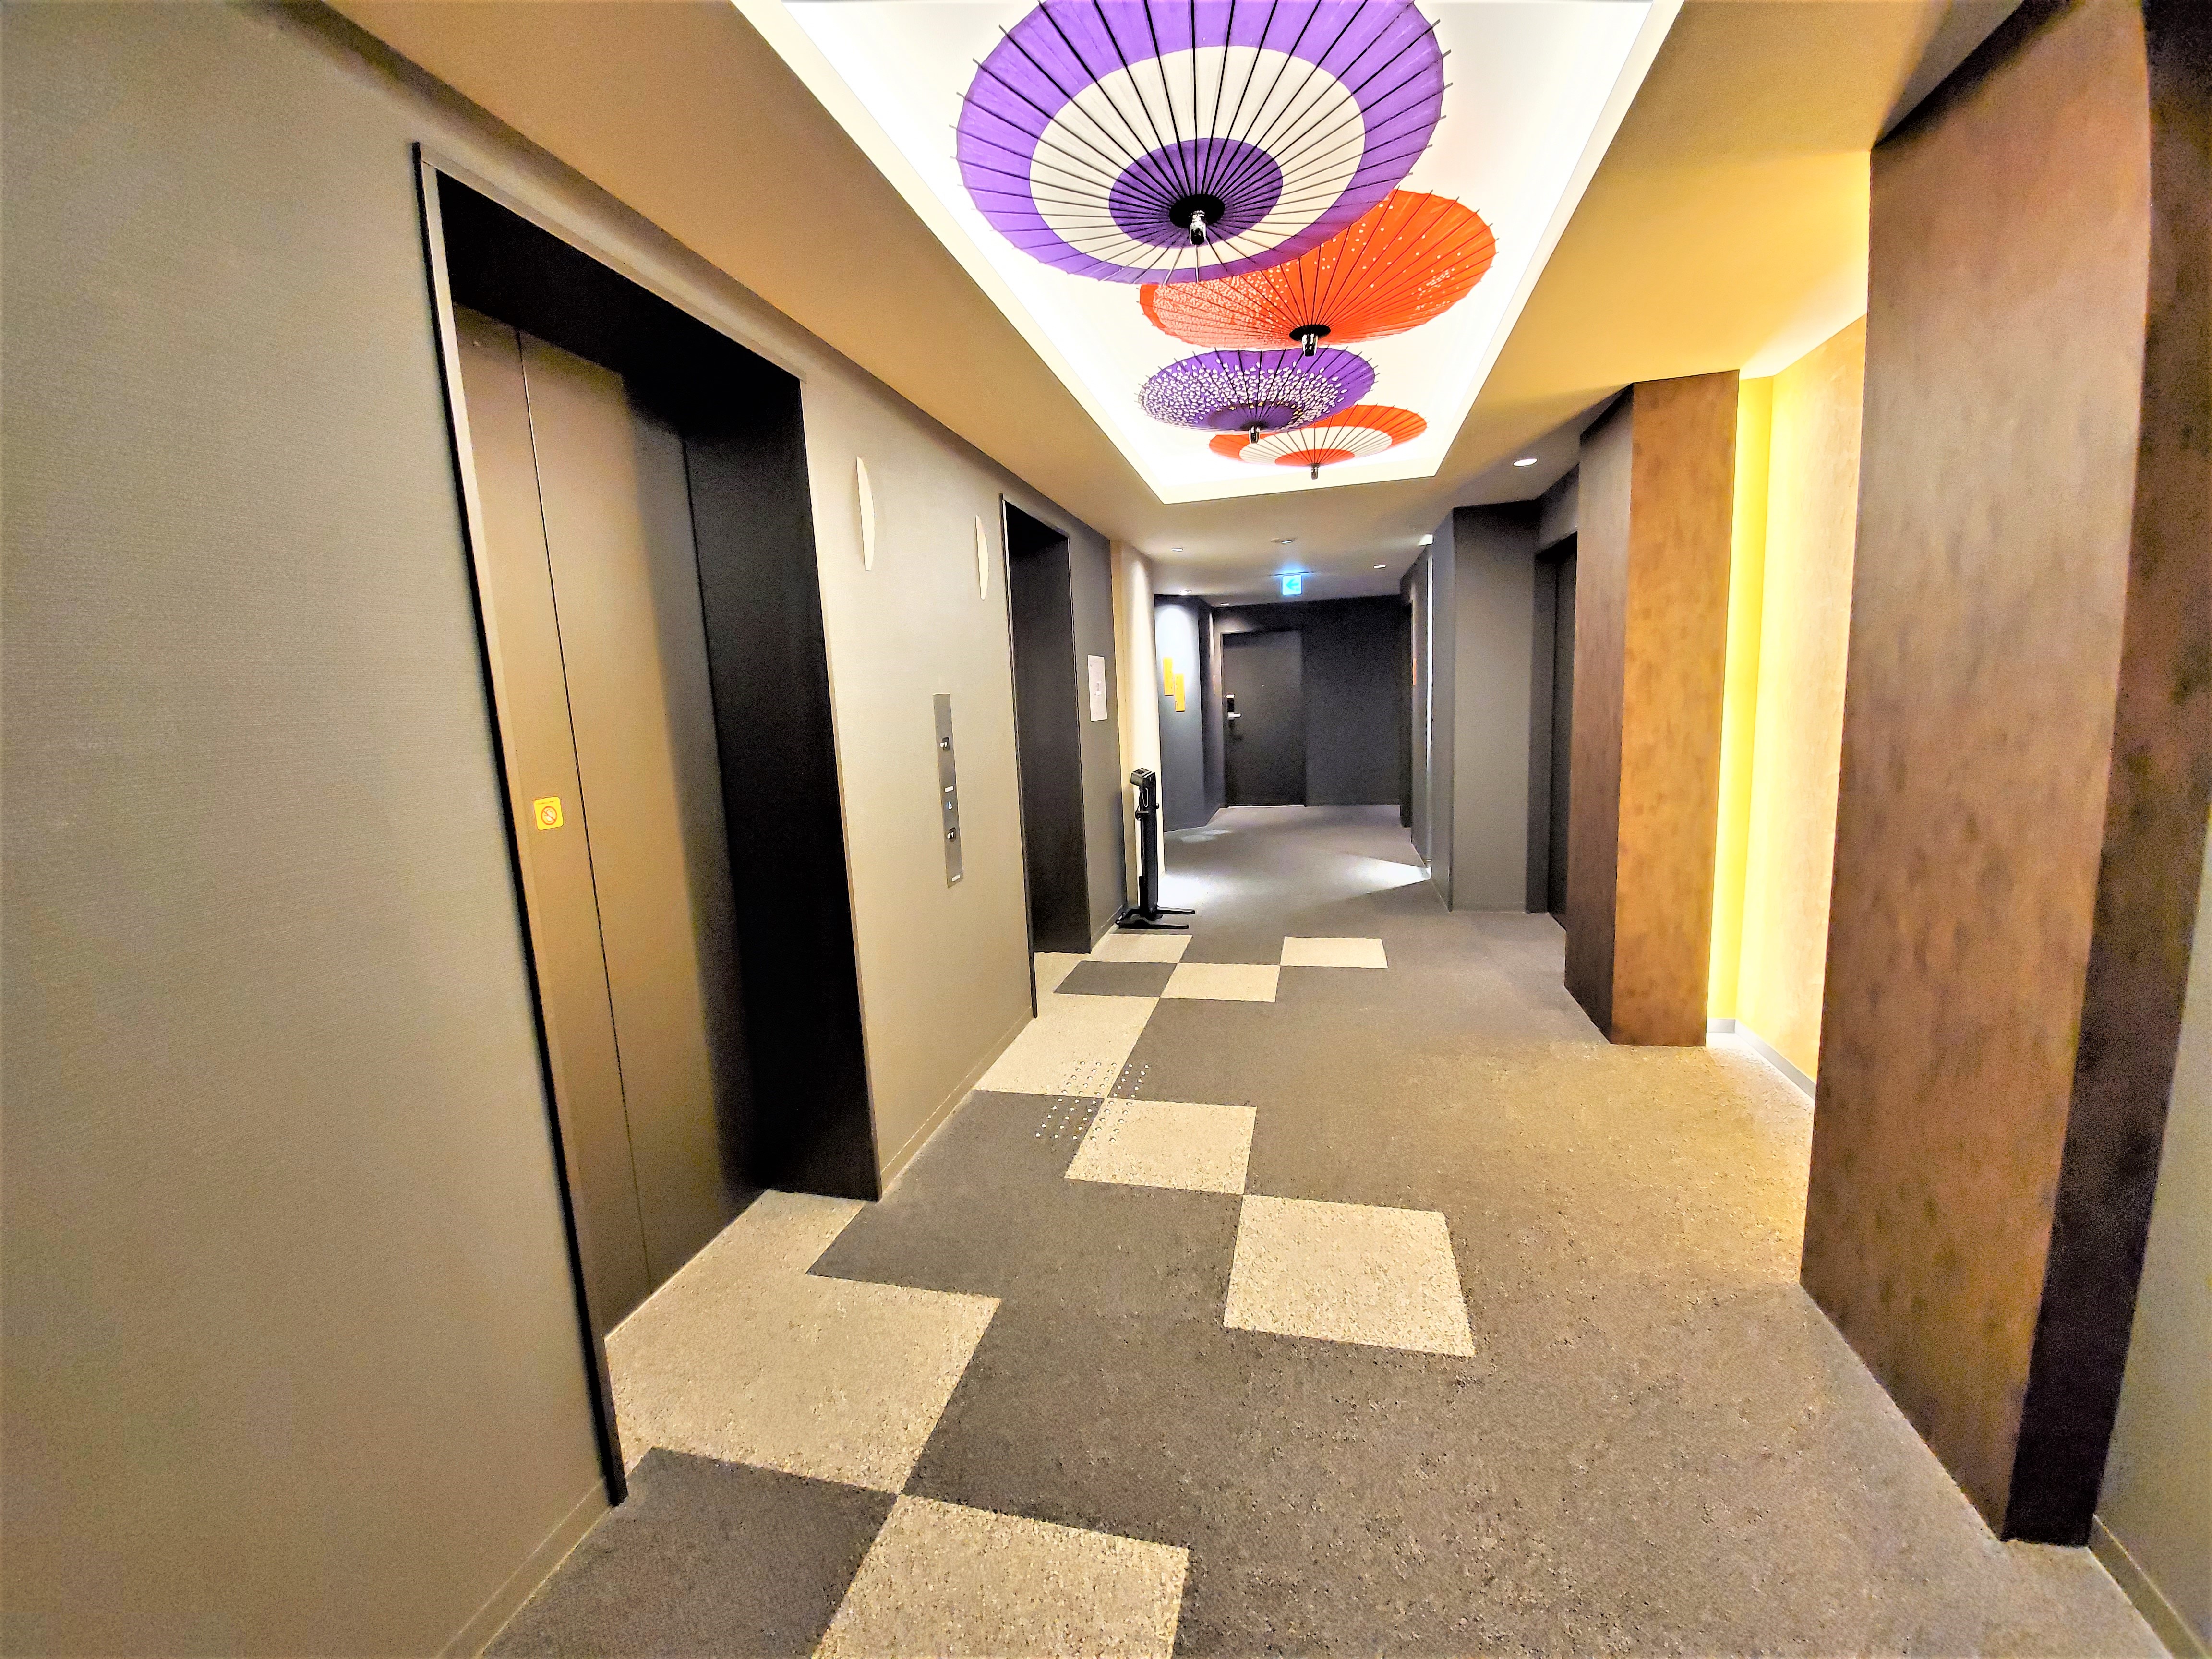 各階の廊下には和傘をモチーフにしたオブジェ